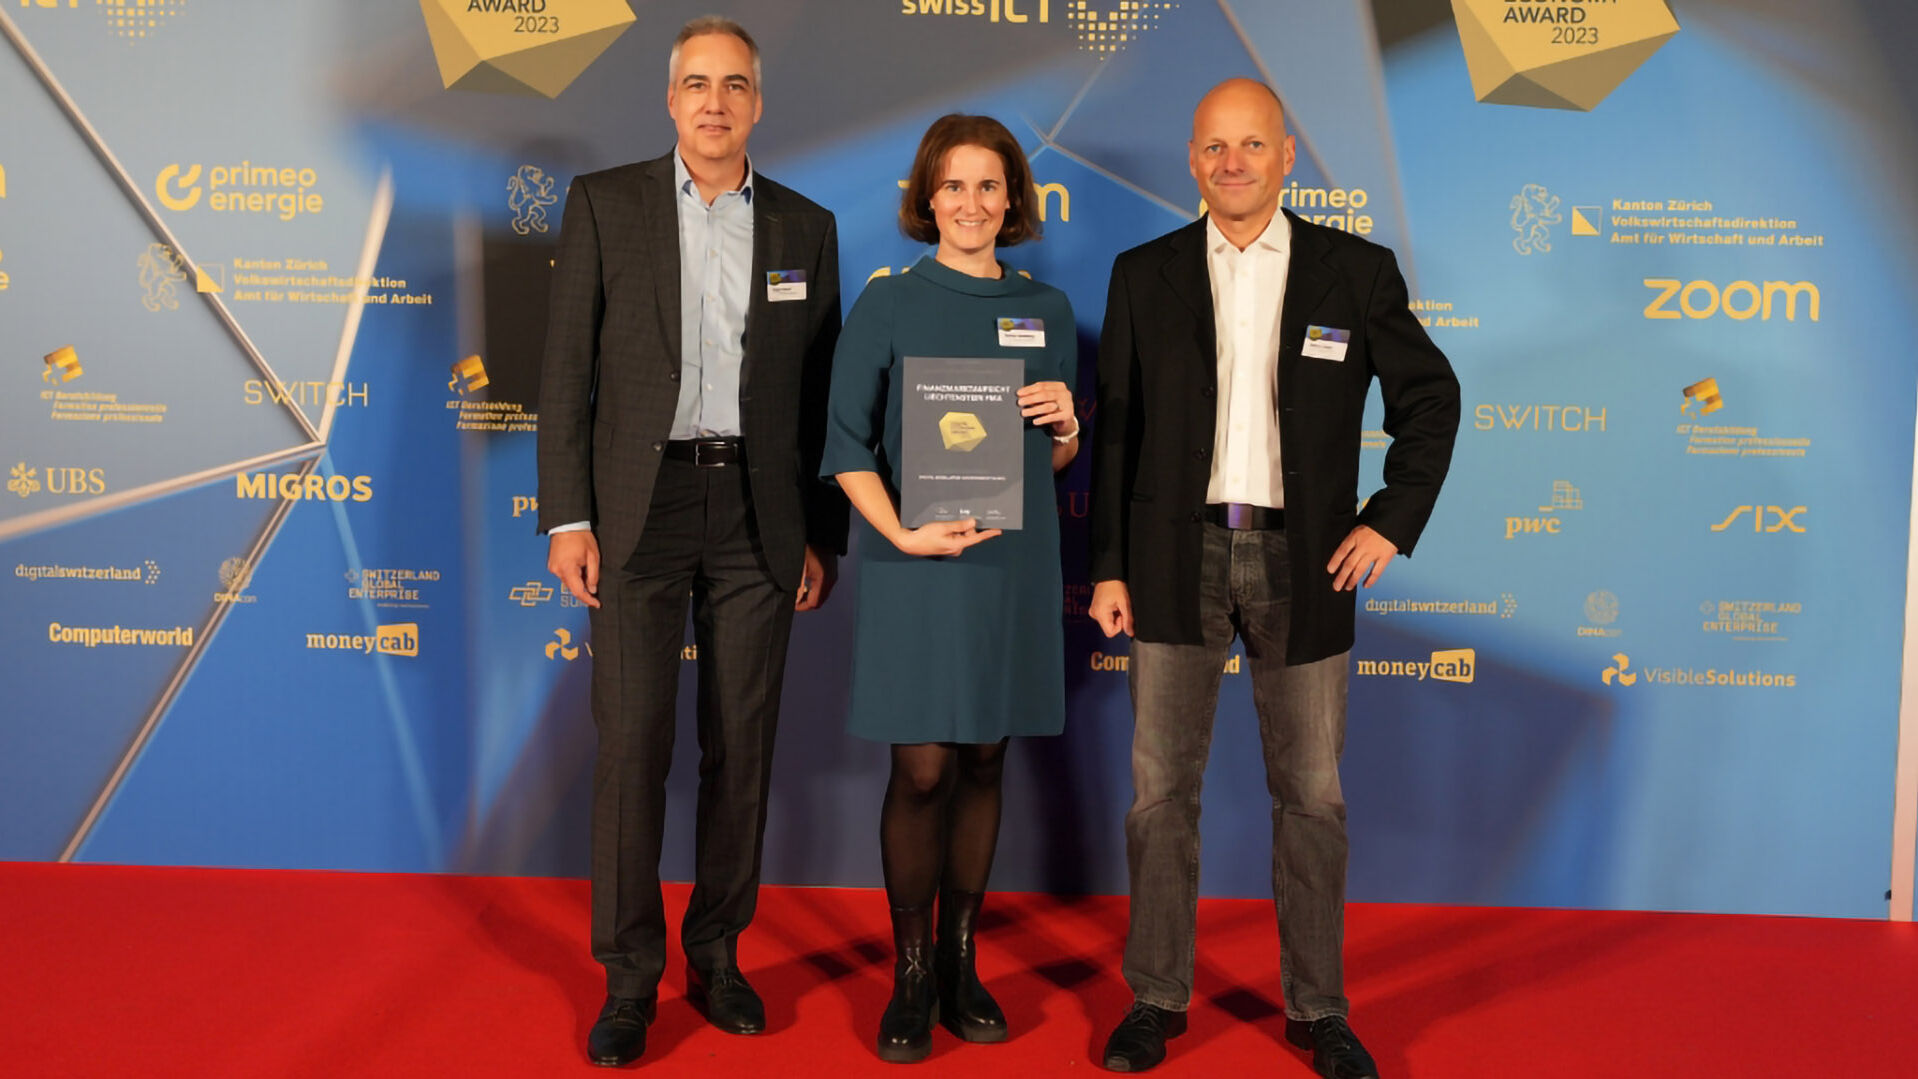 Βραβείο Ψηφιακής Οικονομίας: η συλλογή φωτογραφιών της τελετής απονομής στο Hallenstadion στη Ζυρίχη στην Ελβετία στις 16 Νοεμβρίου 2023